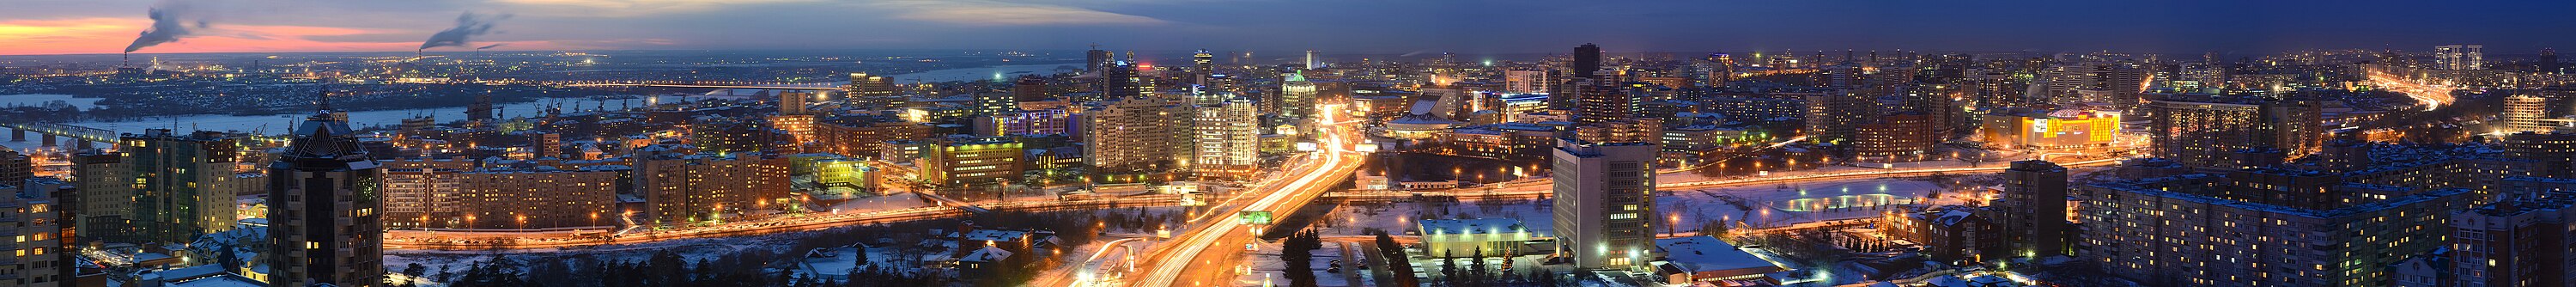 Панорамный вид ночного Новосибирска, 26 января 2013 года.